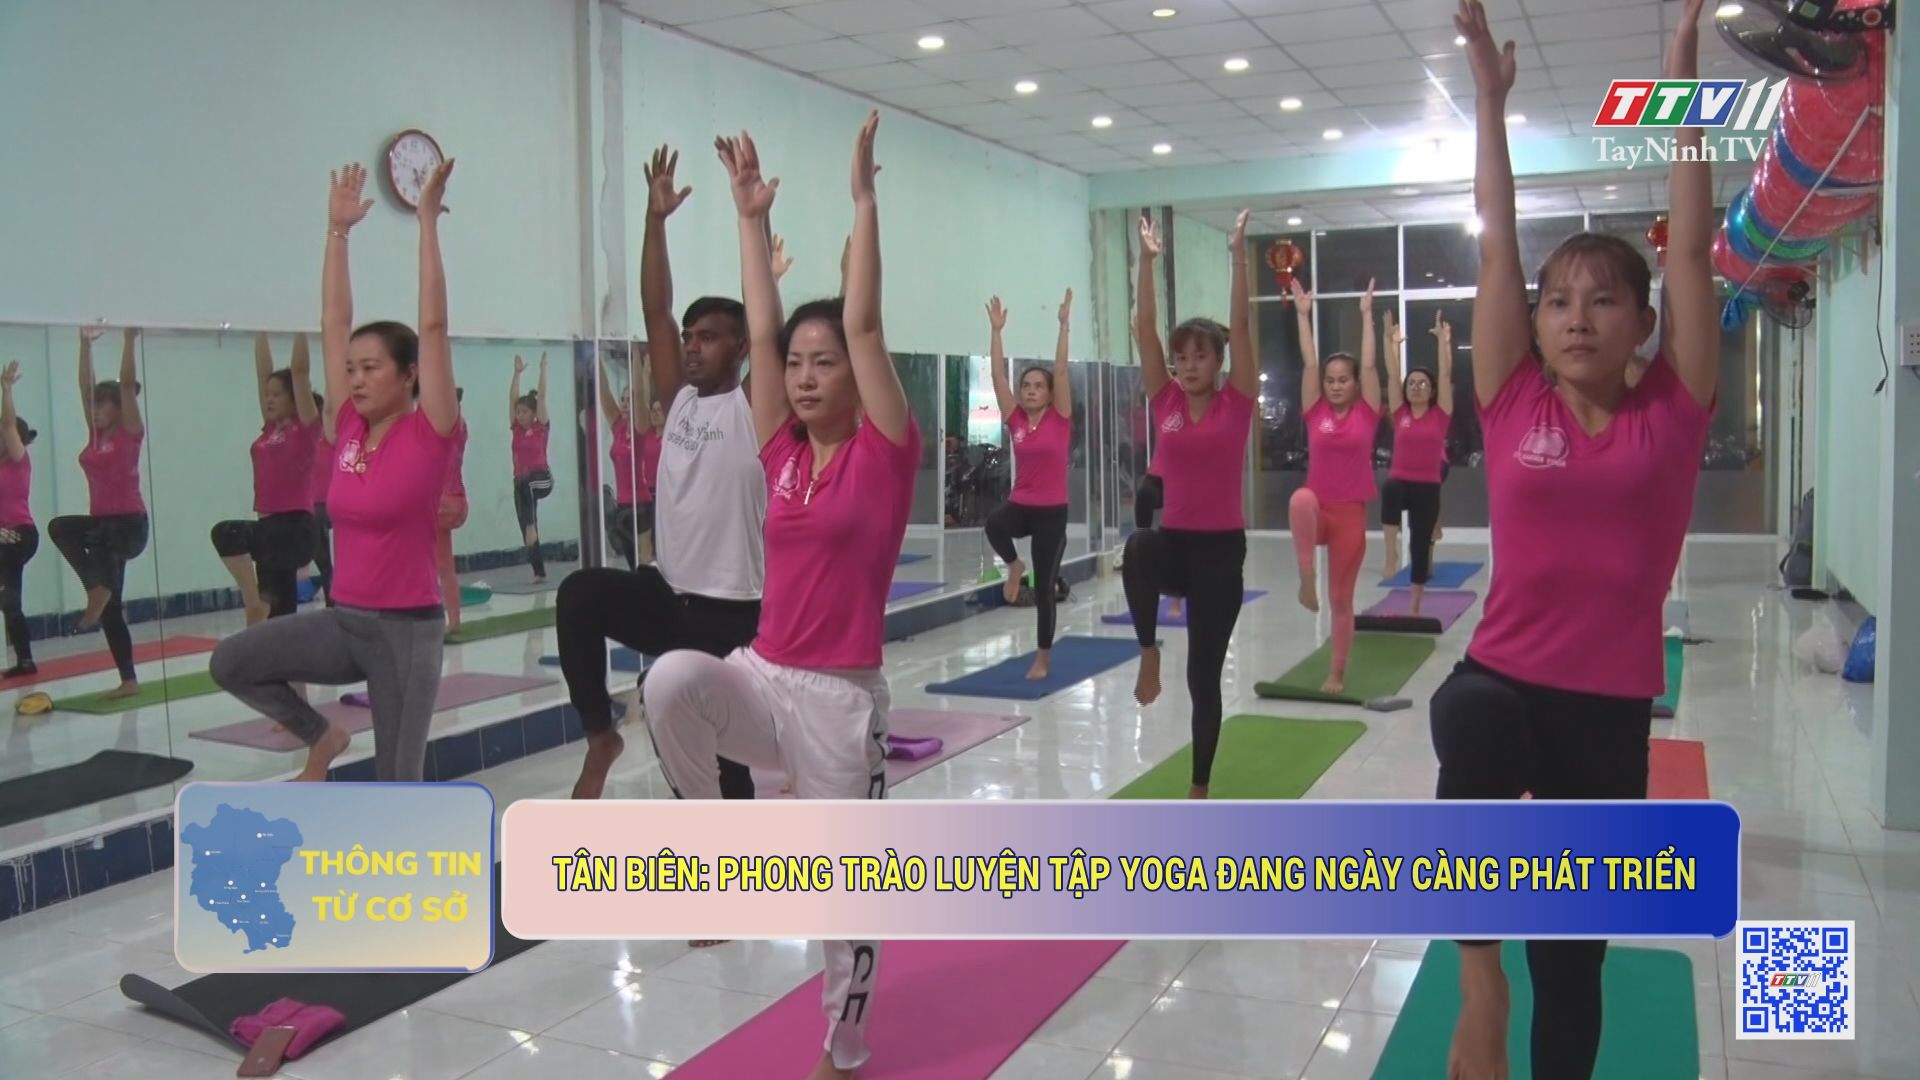 Tân Biên: phong trào luyện tập yoga đang ngày càng phát triển | THÔNG TIN TỪ CƠ SỞ | TayNinhTV